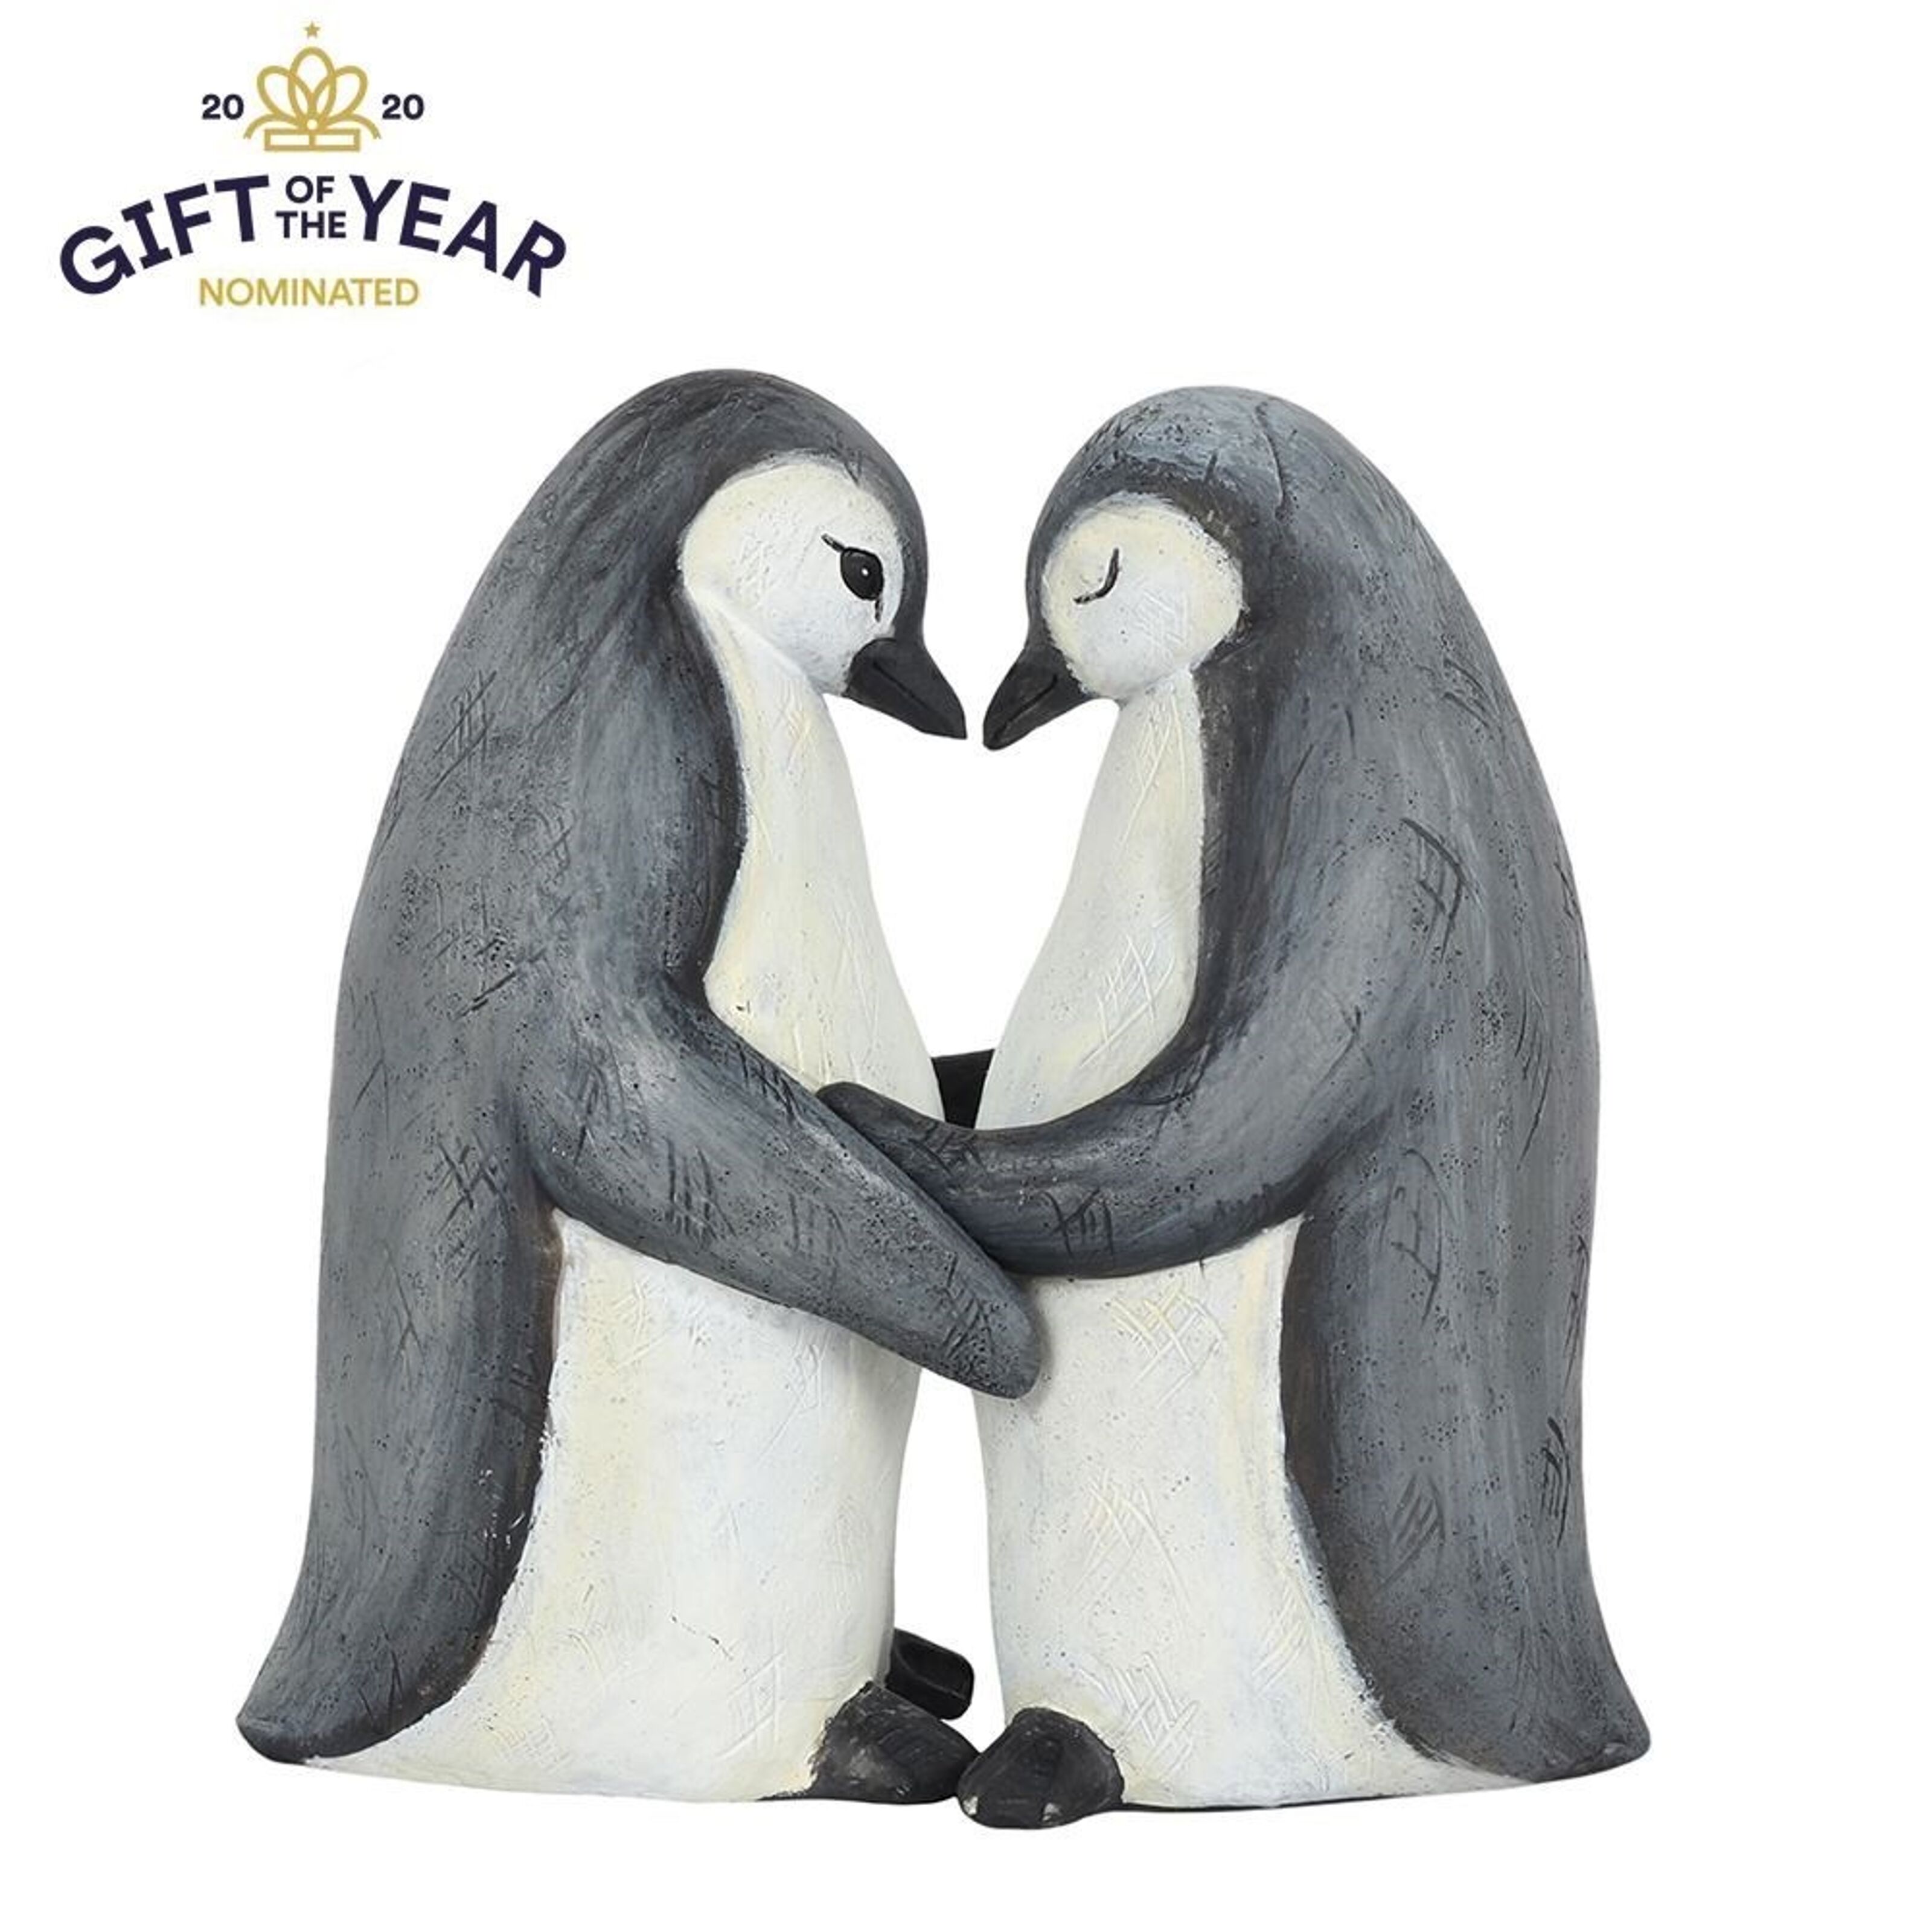 Kaufen Sie Pinguin-Partner für das Leben Ornament zu Großhandelspreisen